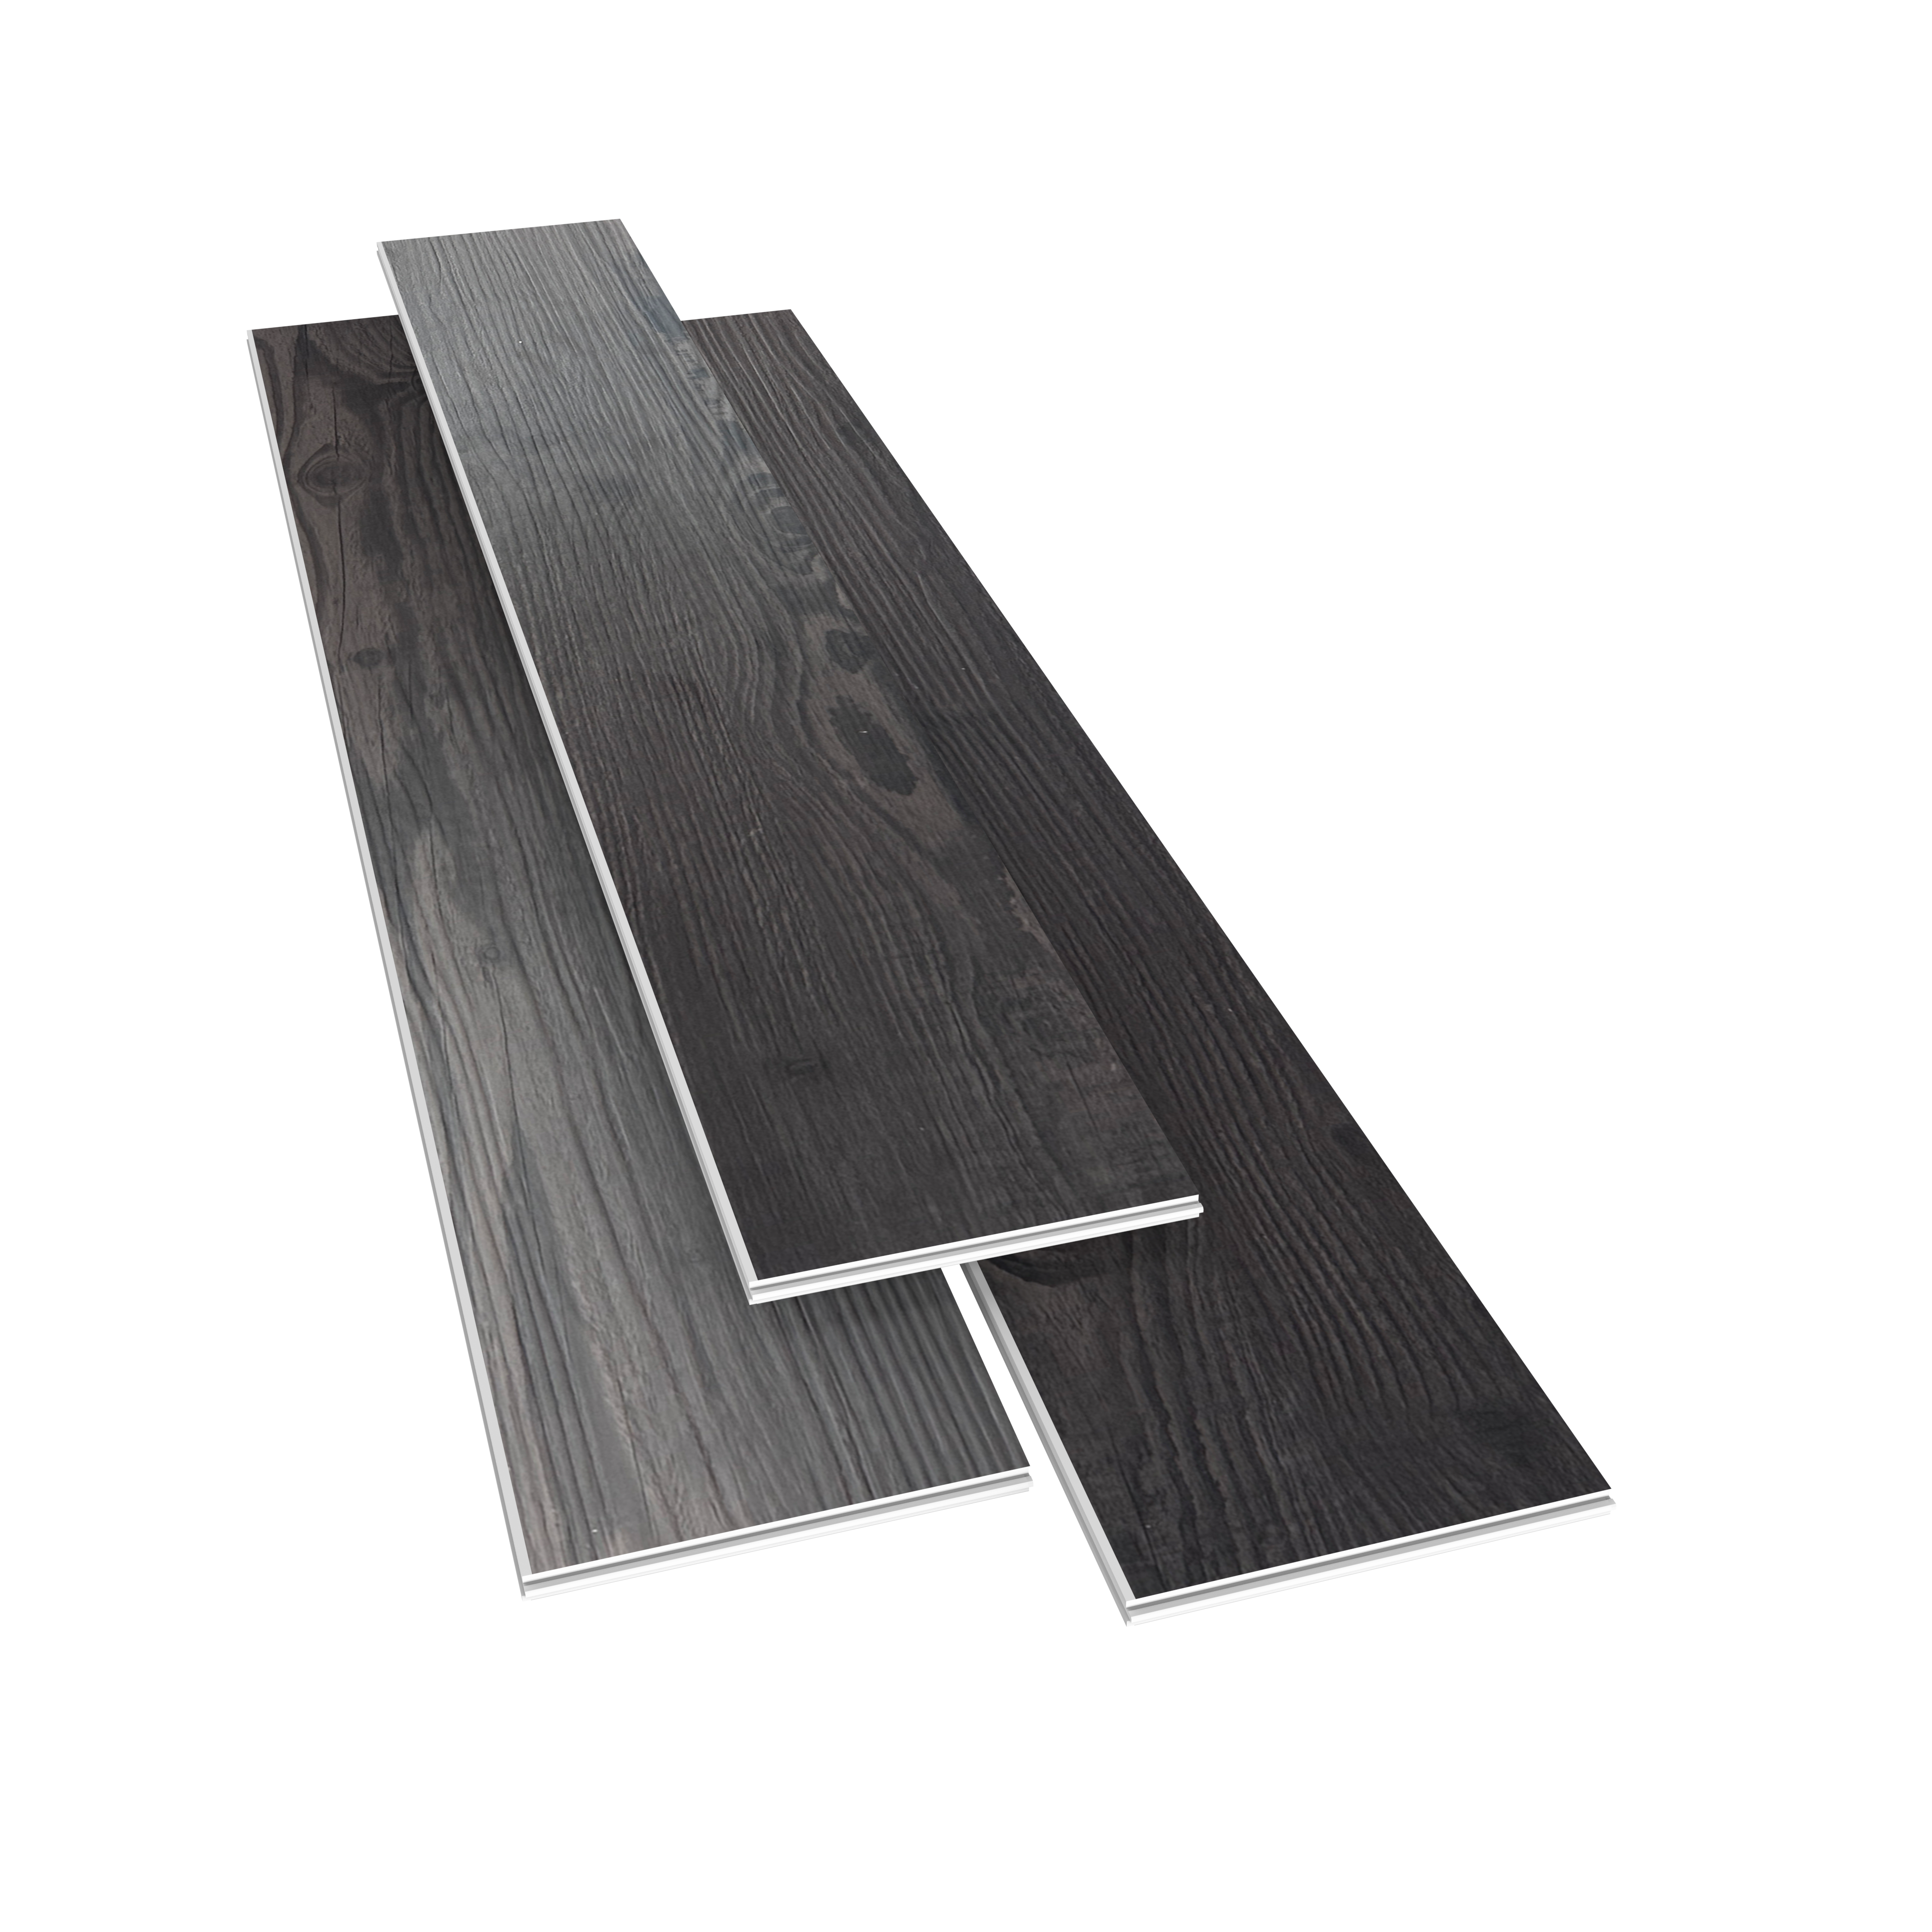 SPC Rigid Core Plank Espresso Flooring, 9" x 60" x 6.5mm, 22 mil Wear Layer